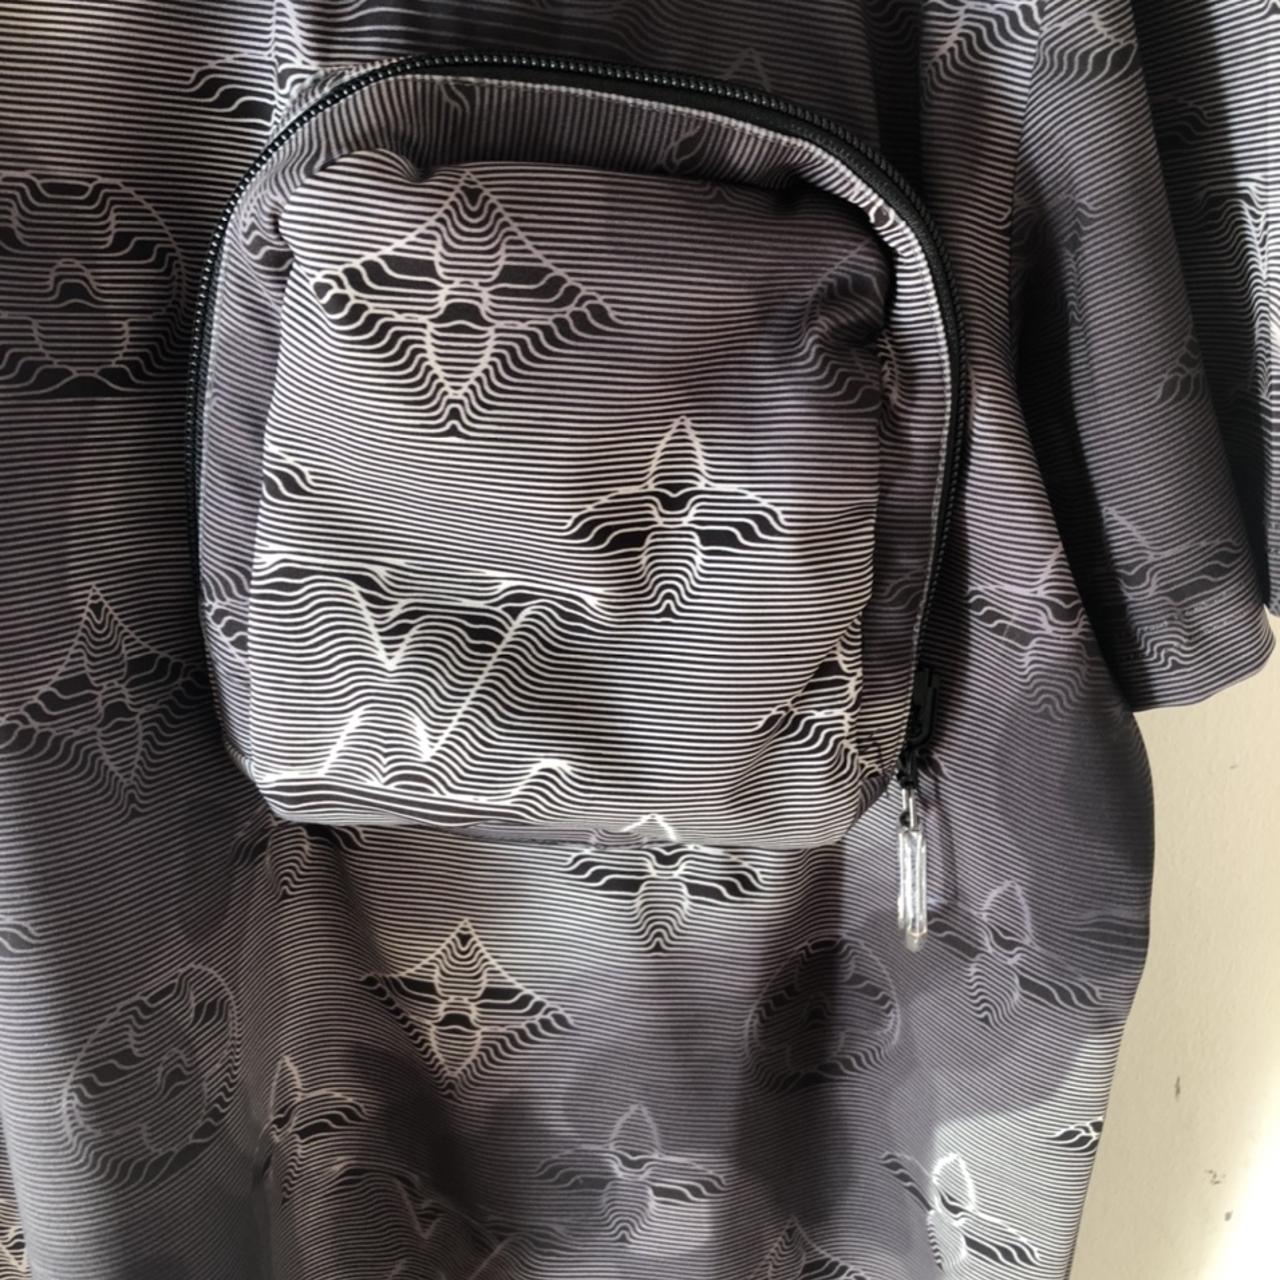  Louis Vuitton 2054 3D monogram pocket t shirt., 